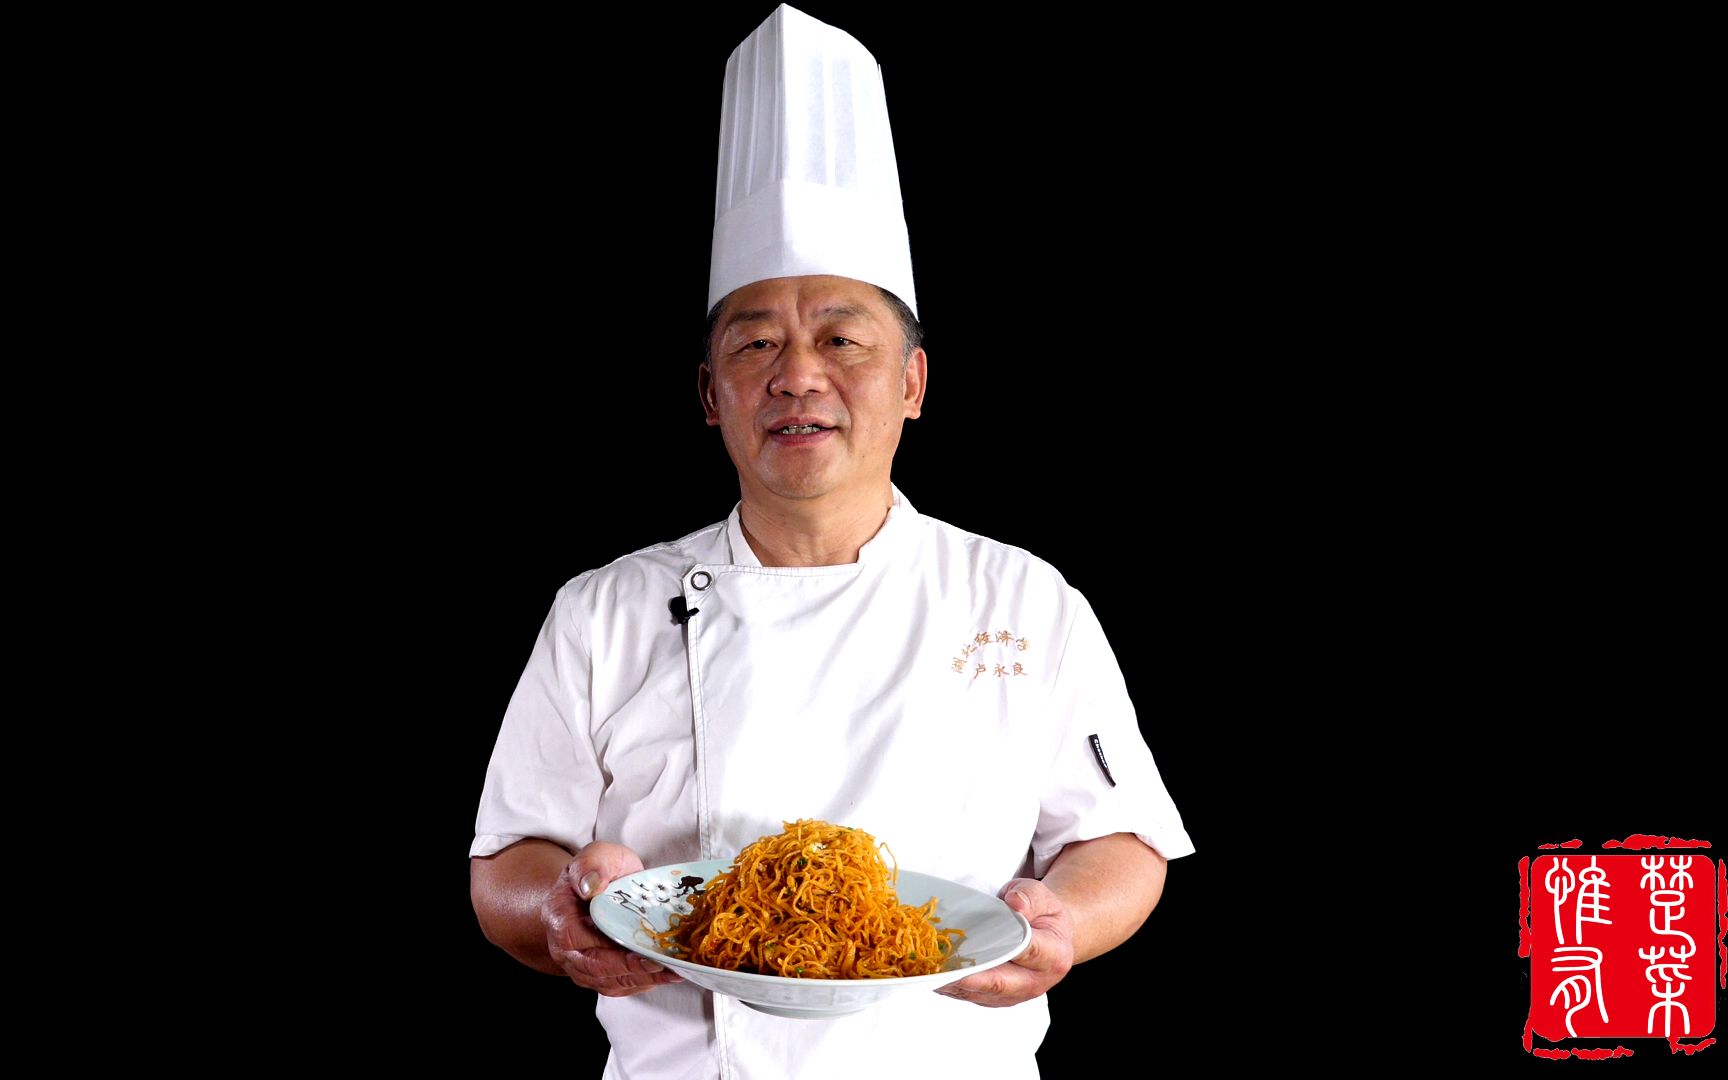 云南省烹饪大师照片图片